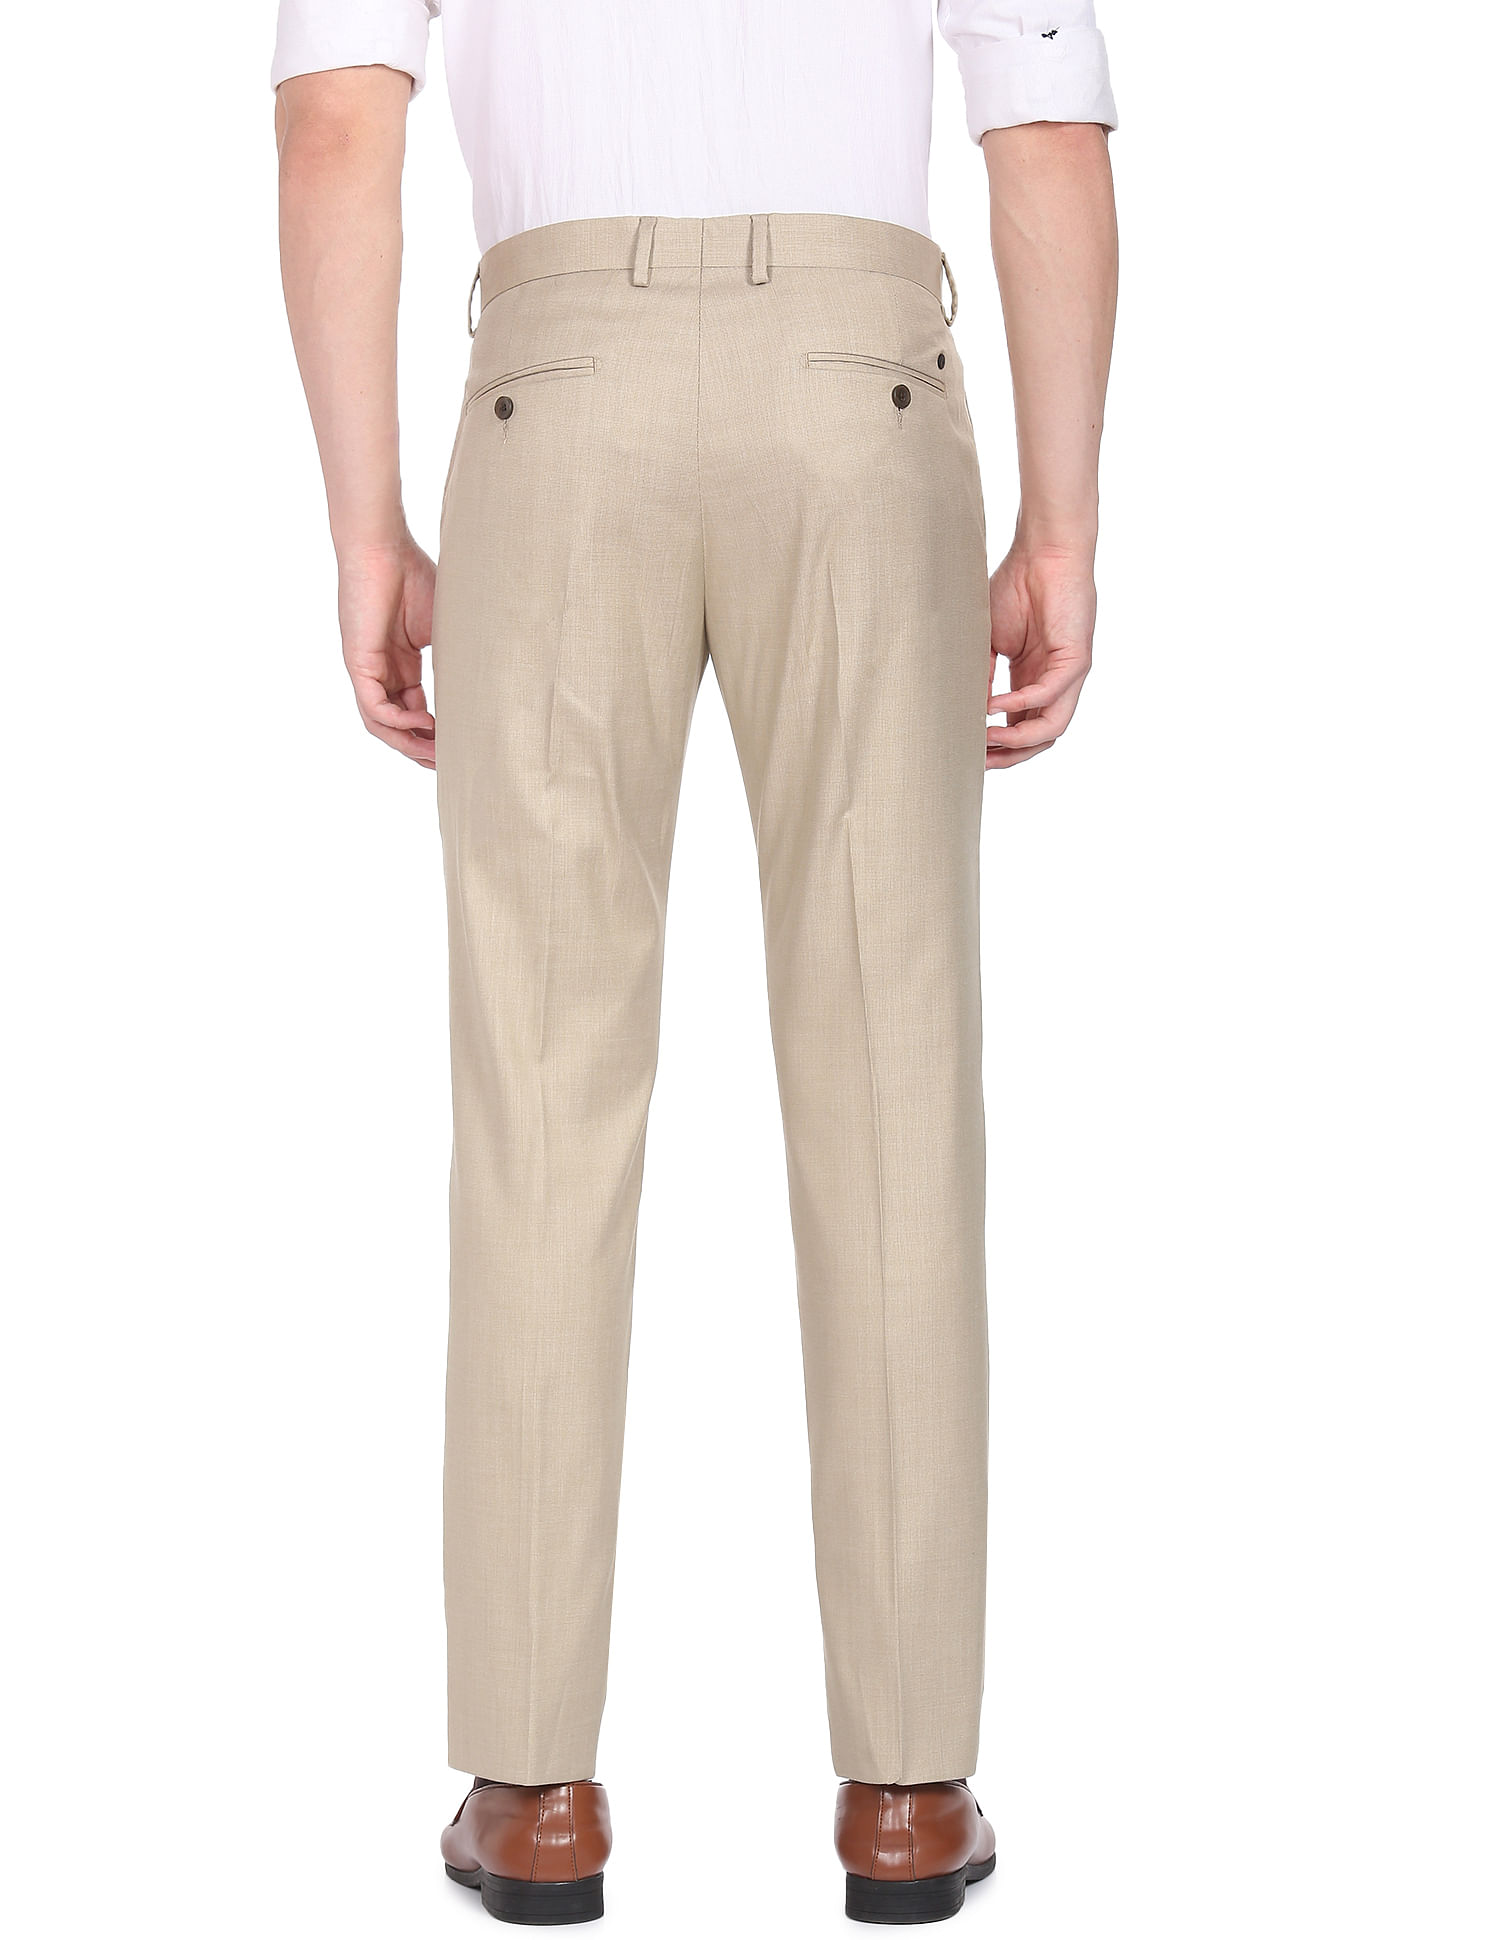 Buy Men Beige Solid Slim Fit Formal Trousers Online - 735606 | Peter England